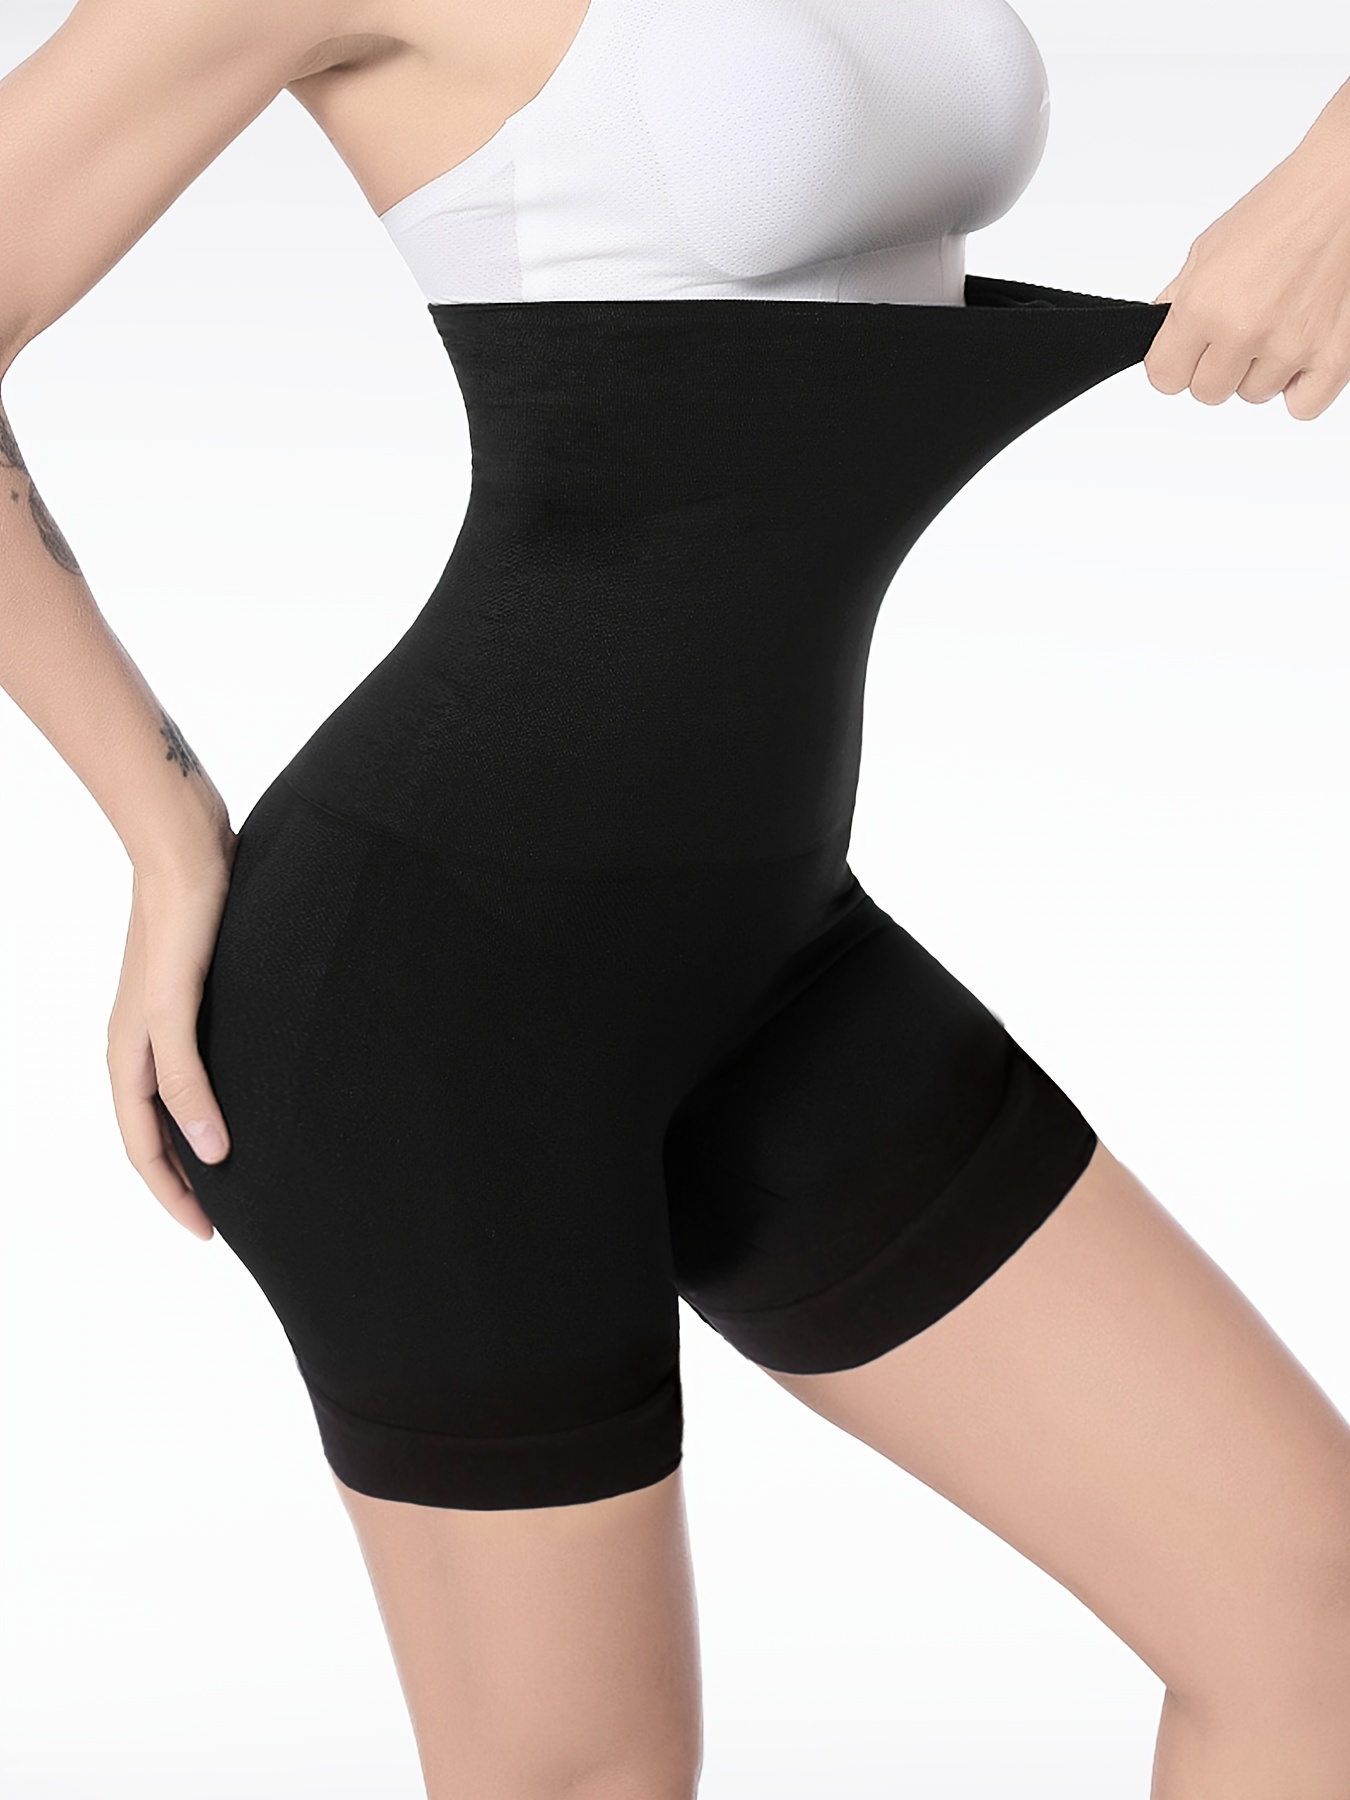 Tummy Control Shapewear Shorts High Waisted Cross Compression Body Shaper  Thigh Slimmer, Women's Underwear & Shapewear